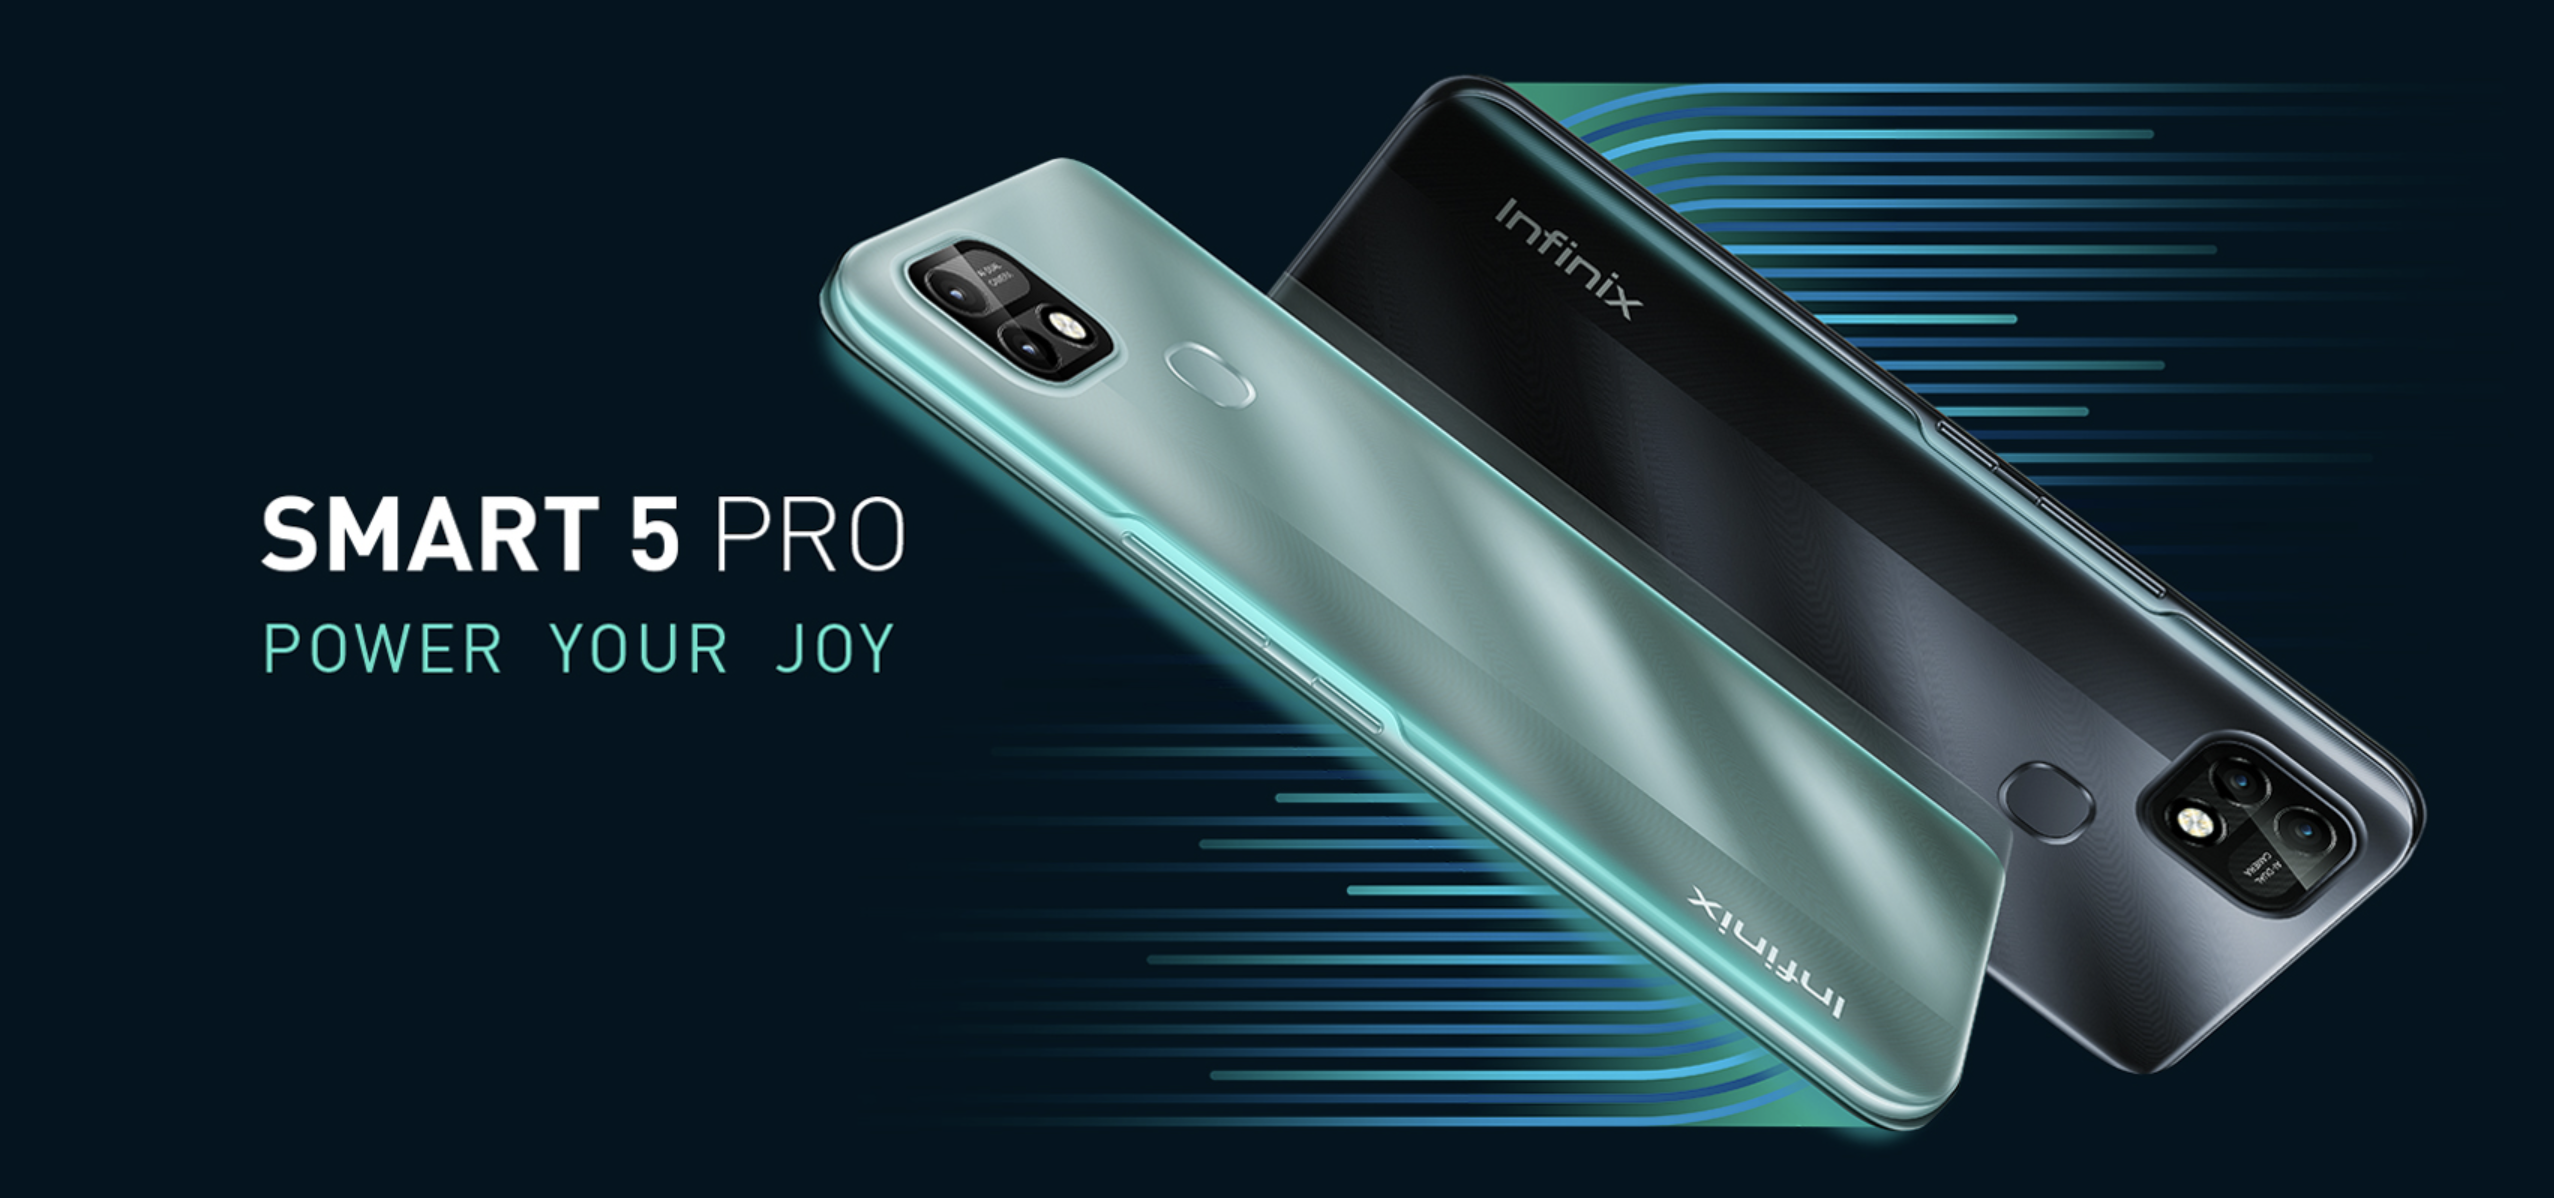 Infinix Smart 5 Pro: smartphone económico con batería de 6000mAh y Android 11 Go Edition a bordo